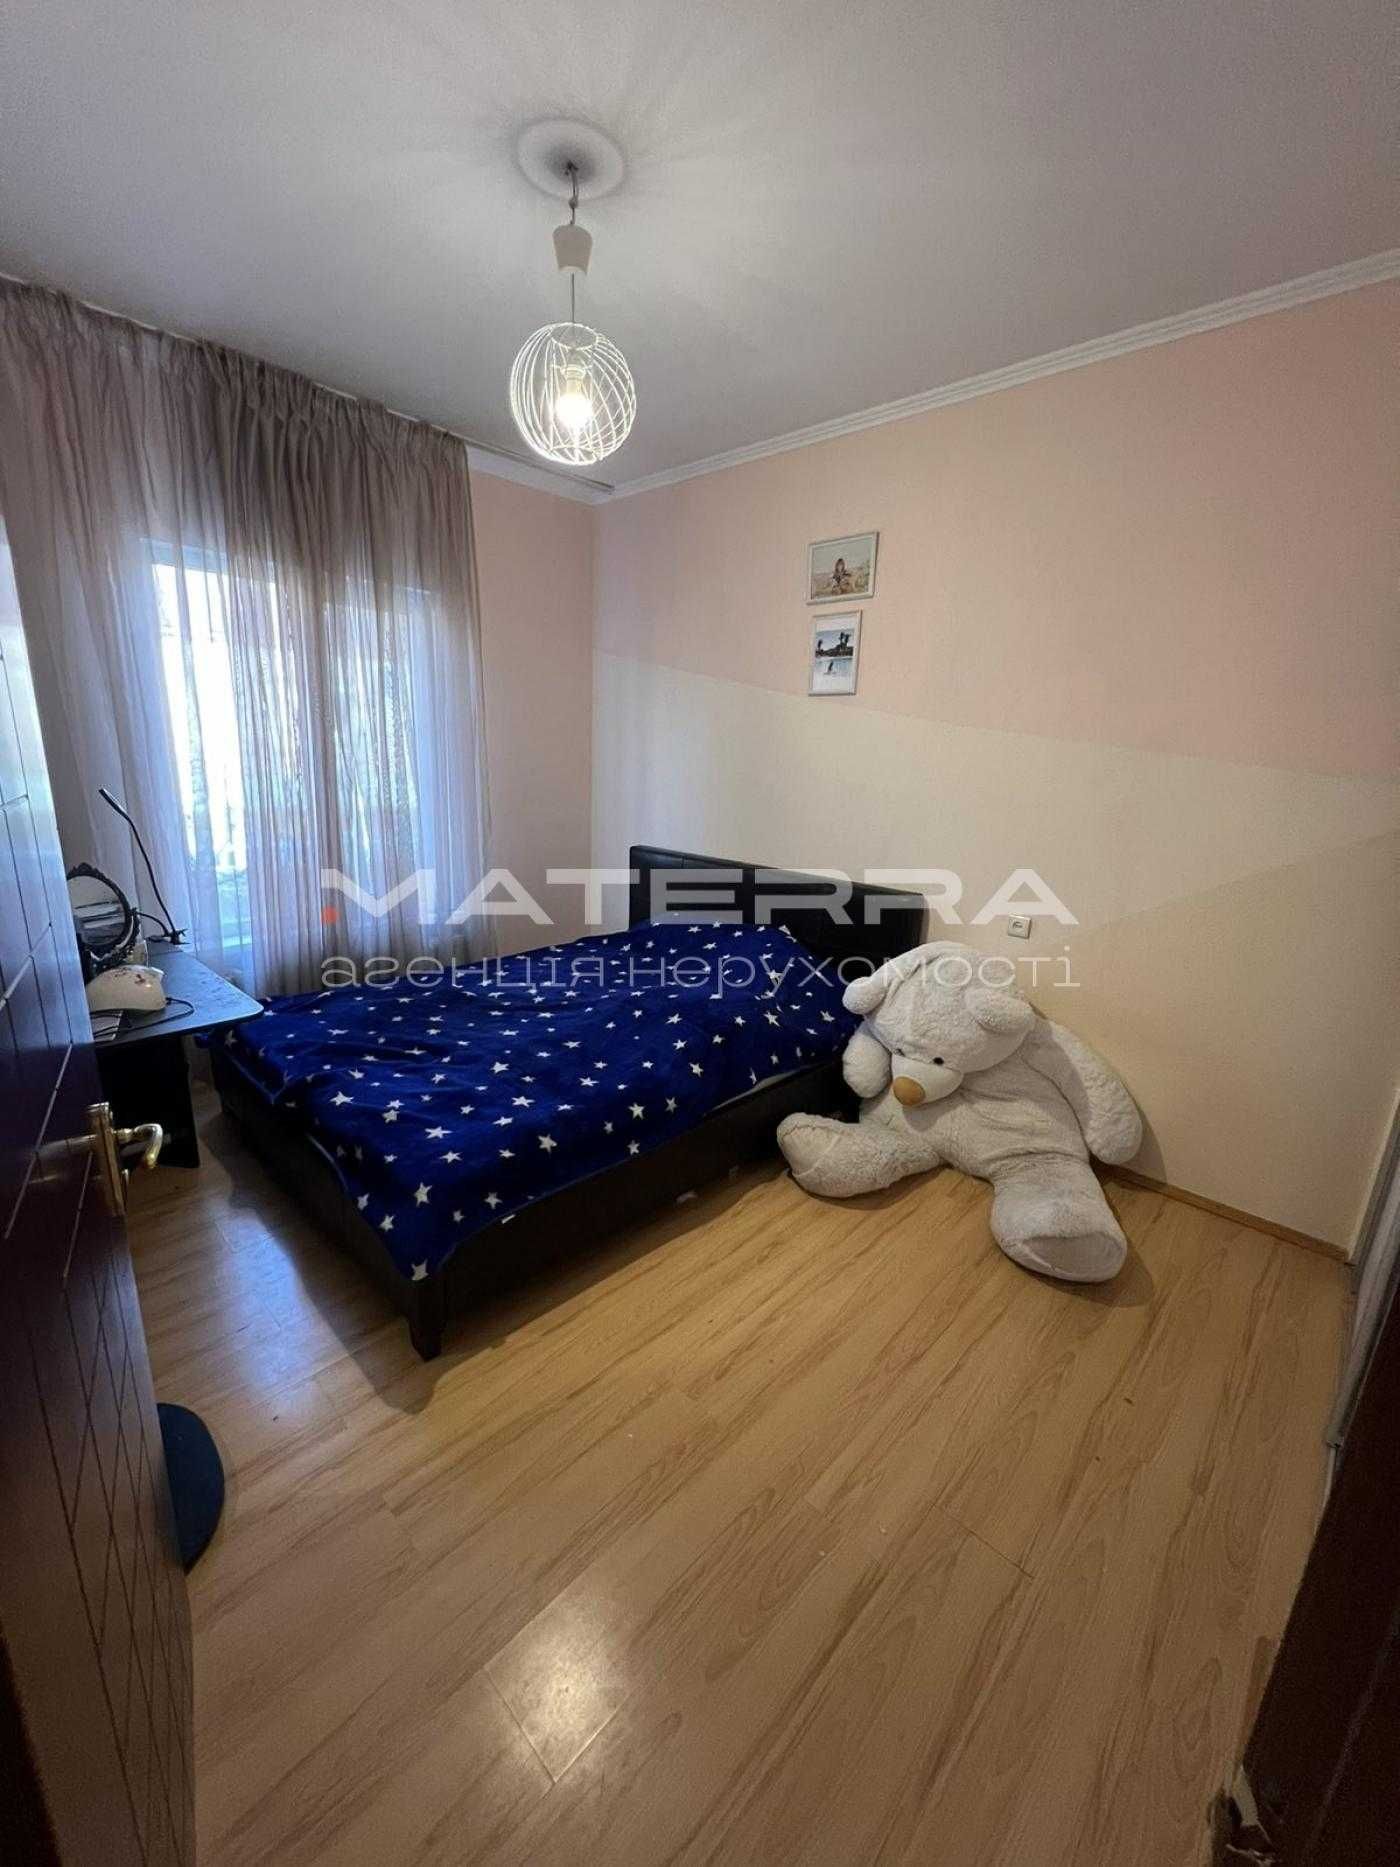 Продаж будинку 212 м2 з Ремонтом та Технікою Київ 30 хв